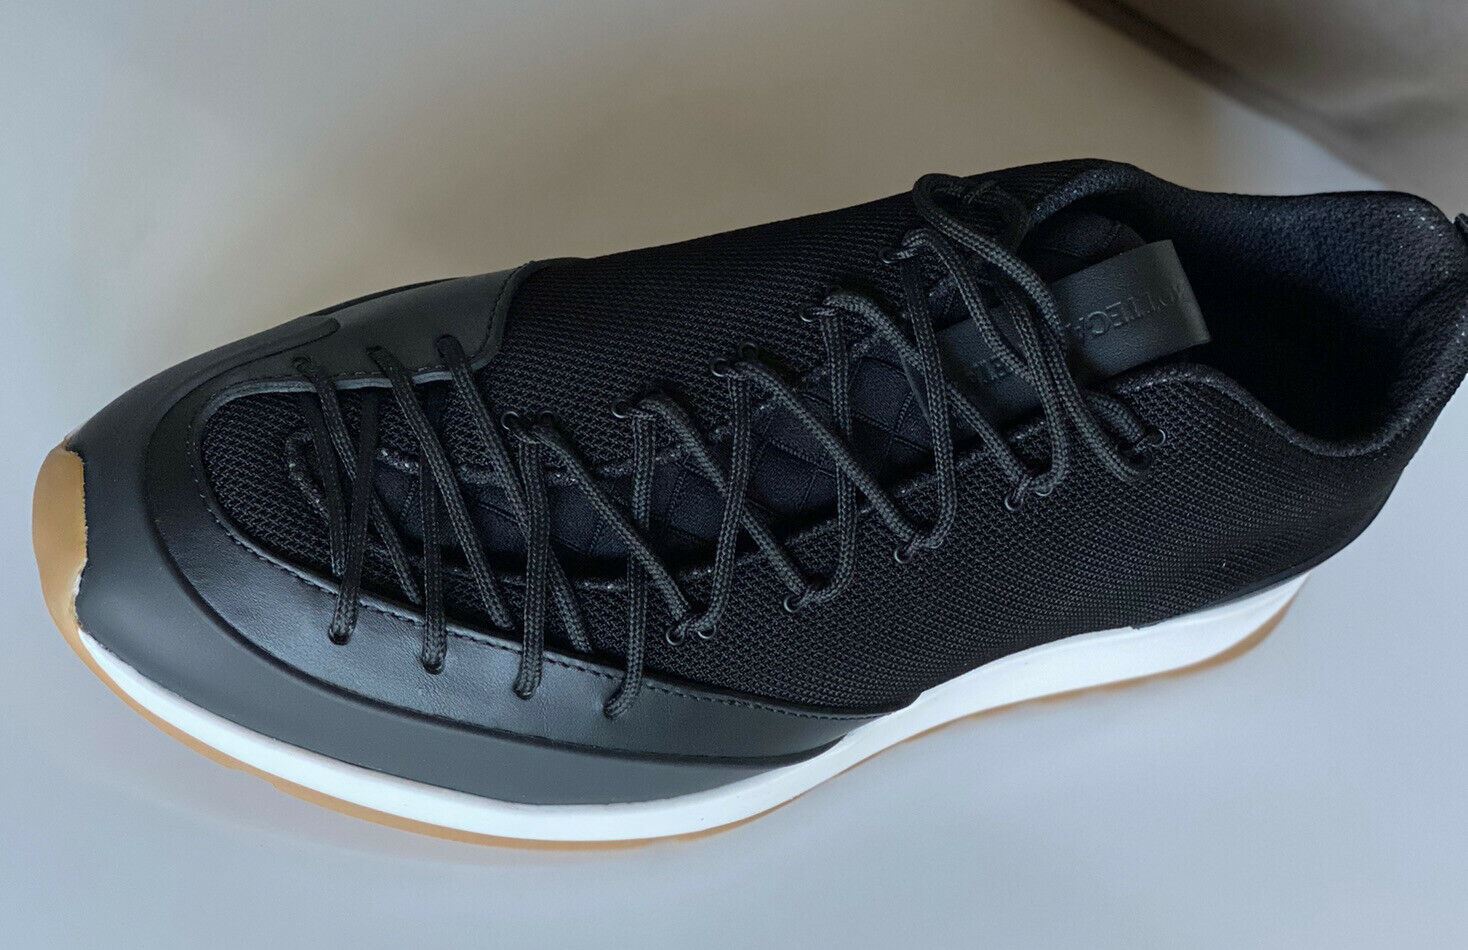 NIB $790 Bottega Veneta Men's Scar Tex Black Sneakers 8 US (41 Euro) 609891